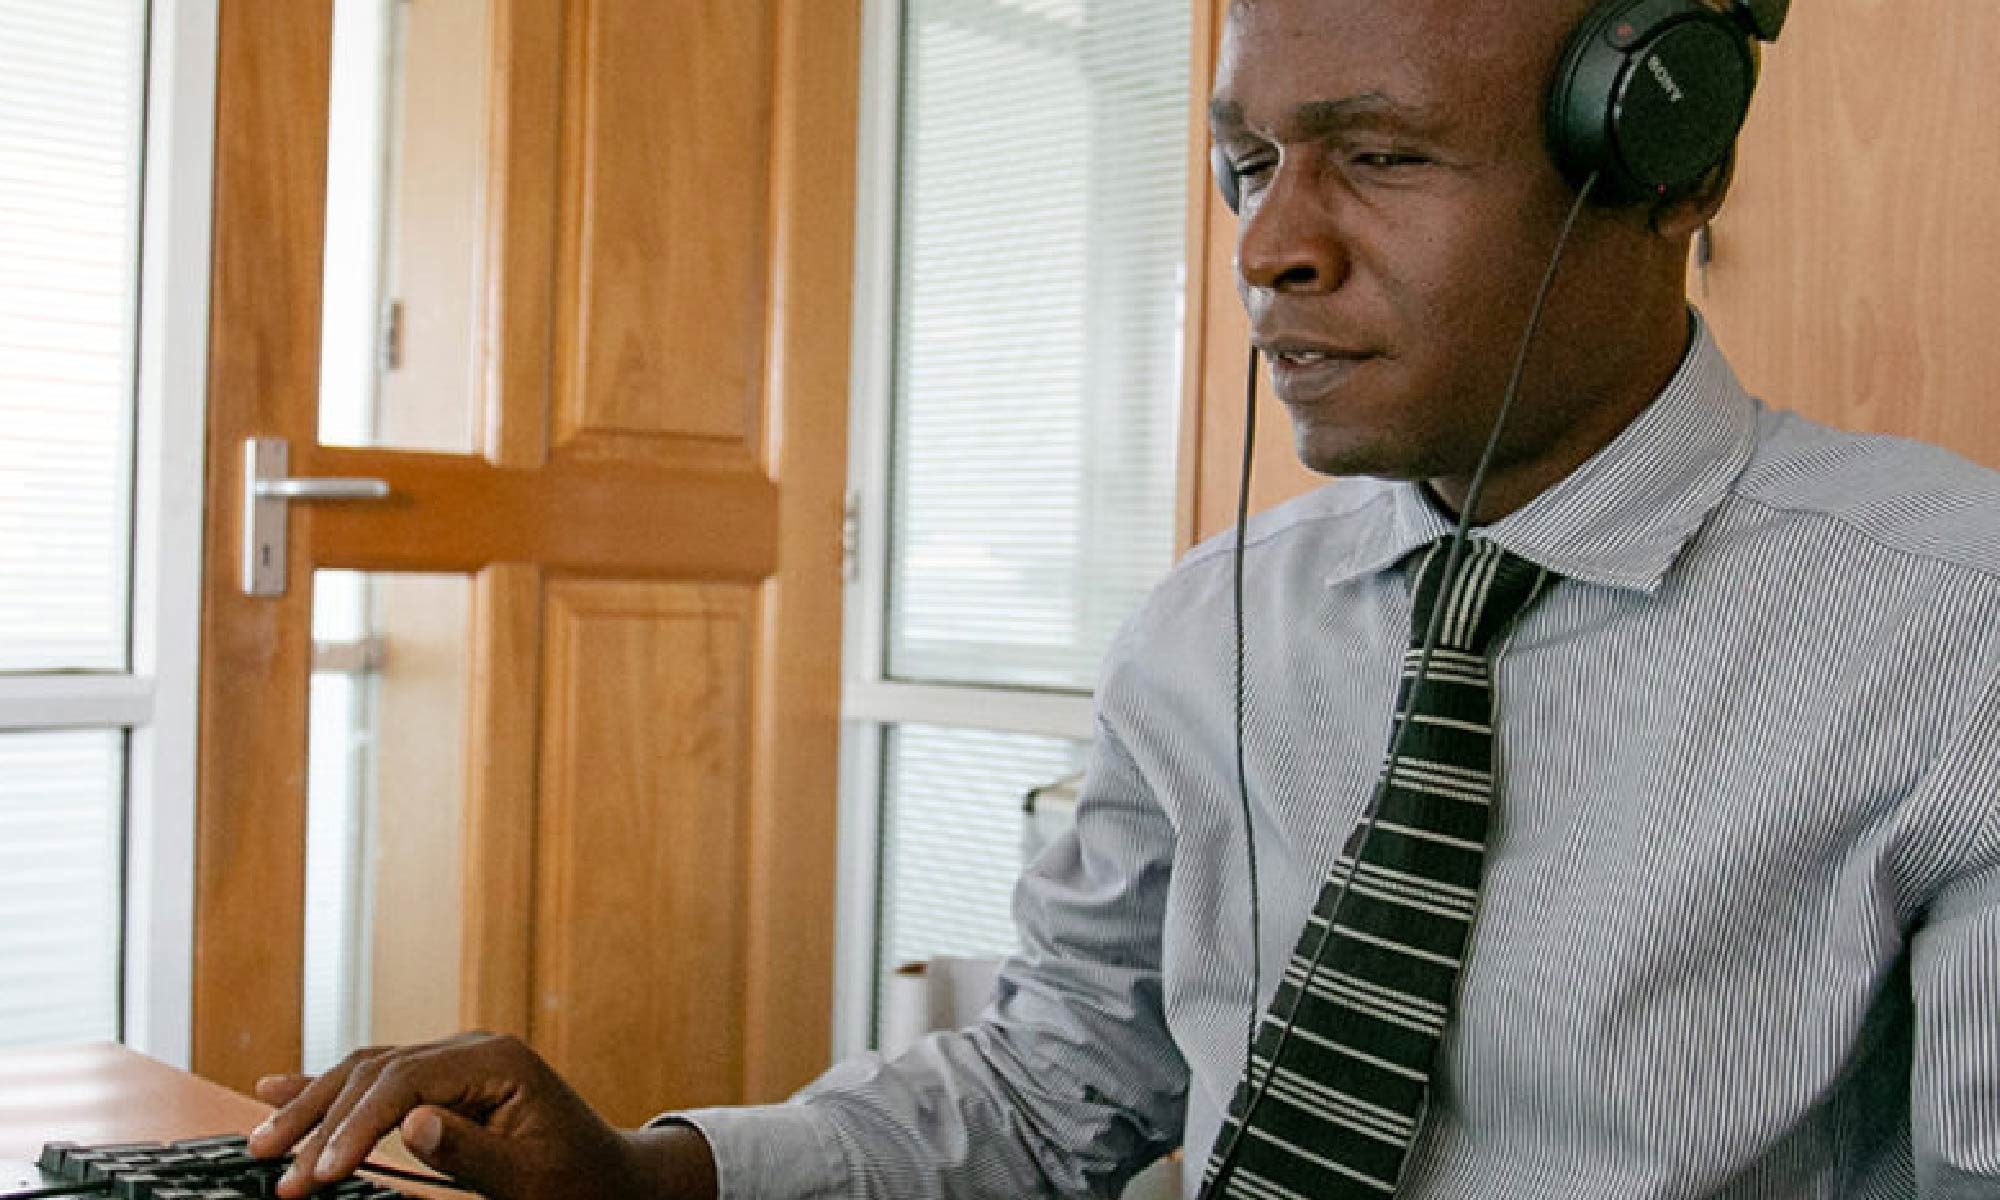 foto de um homem de gravata trabalhando em um computador e usando fones de ouvido. Está escrito: "Direito ao Emprego para as pessoas com deficiência" #direitospcd e há a logo da Retina Brasil